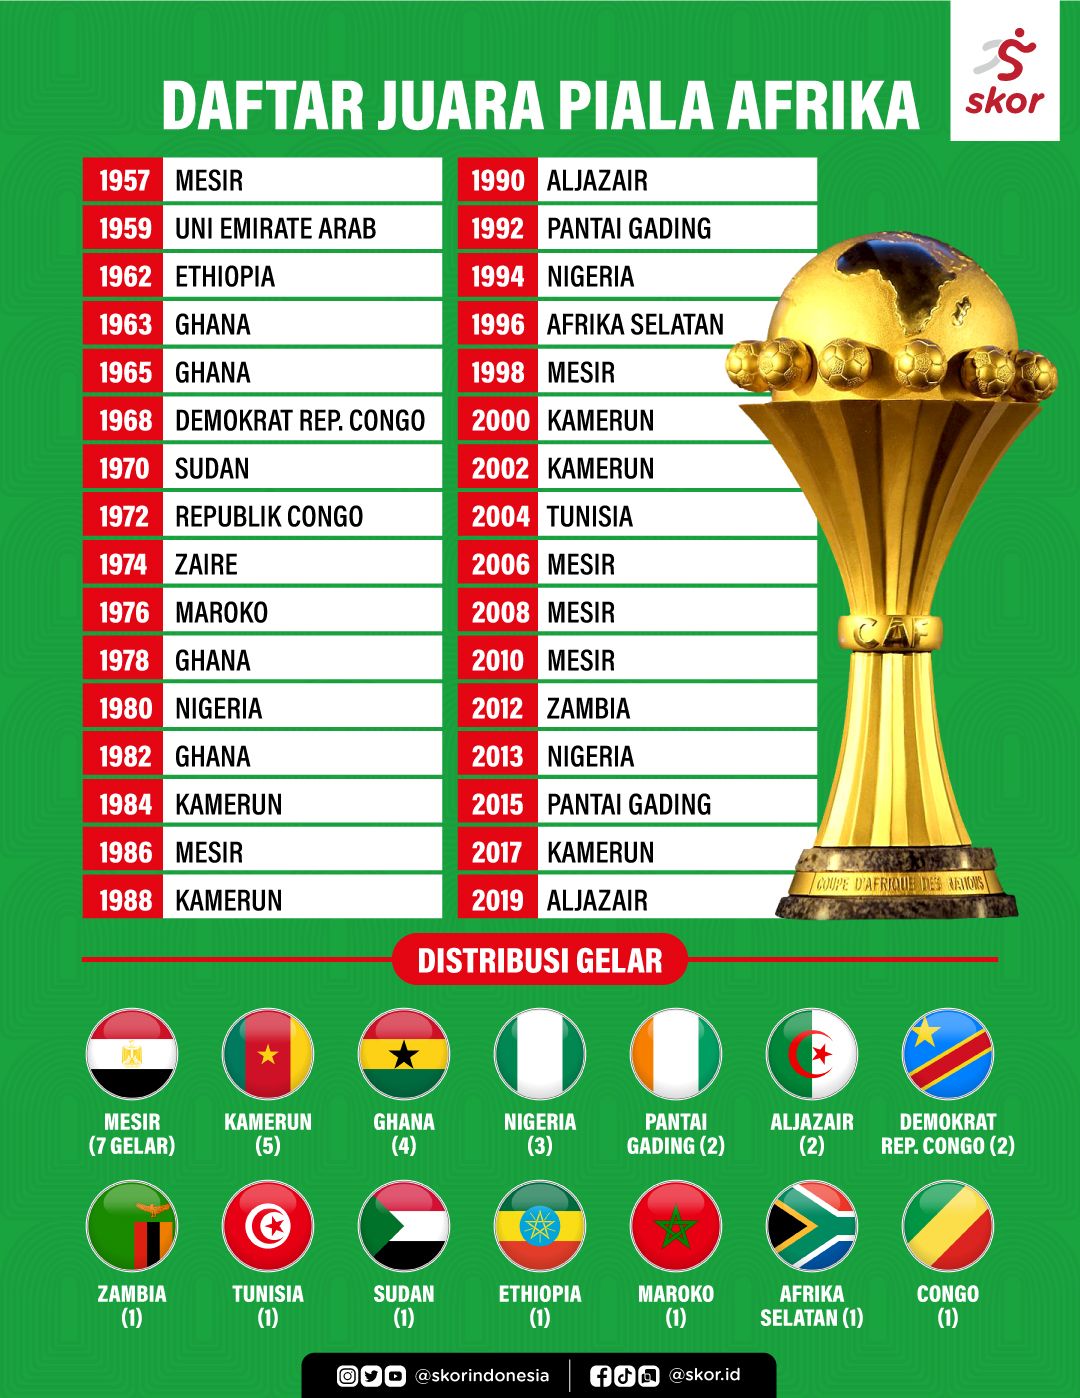 Daftar Juara Piala Afrika